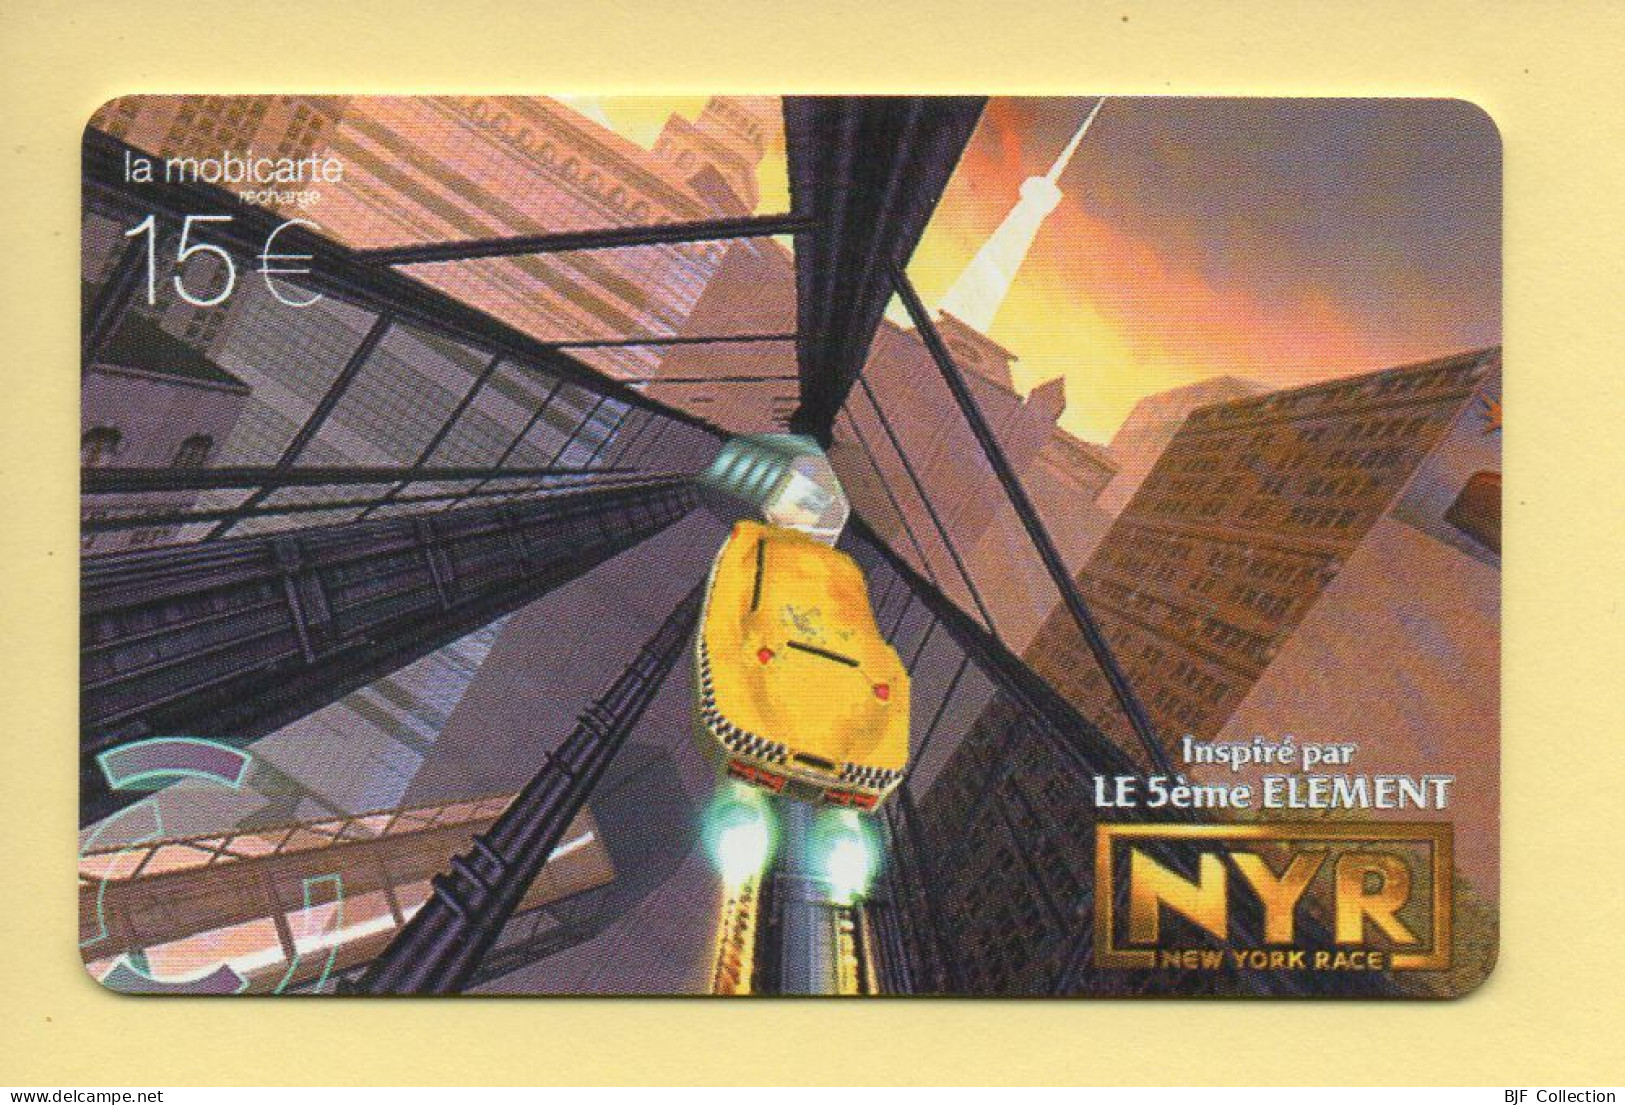 Mobicarte Collector : NEW YORK RACE / LE 5ème ELEMENT : Orange : 06/2003 : Recharge 15 E (voir Cadre Et Numérotation) - Nachladekarten (Refill)